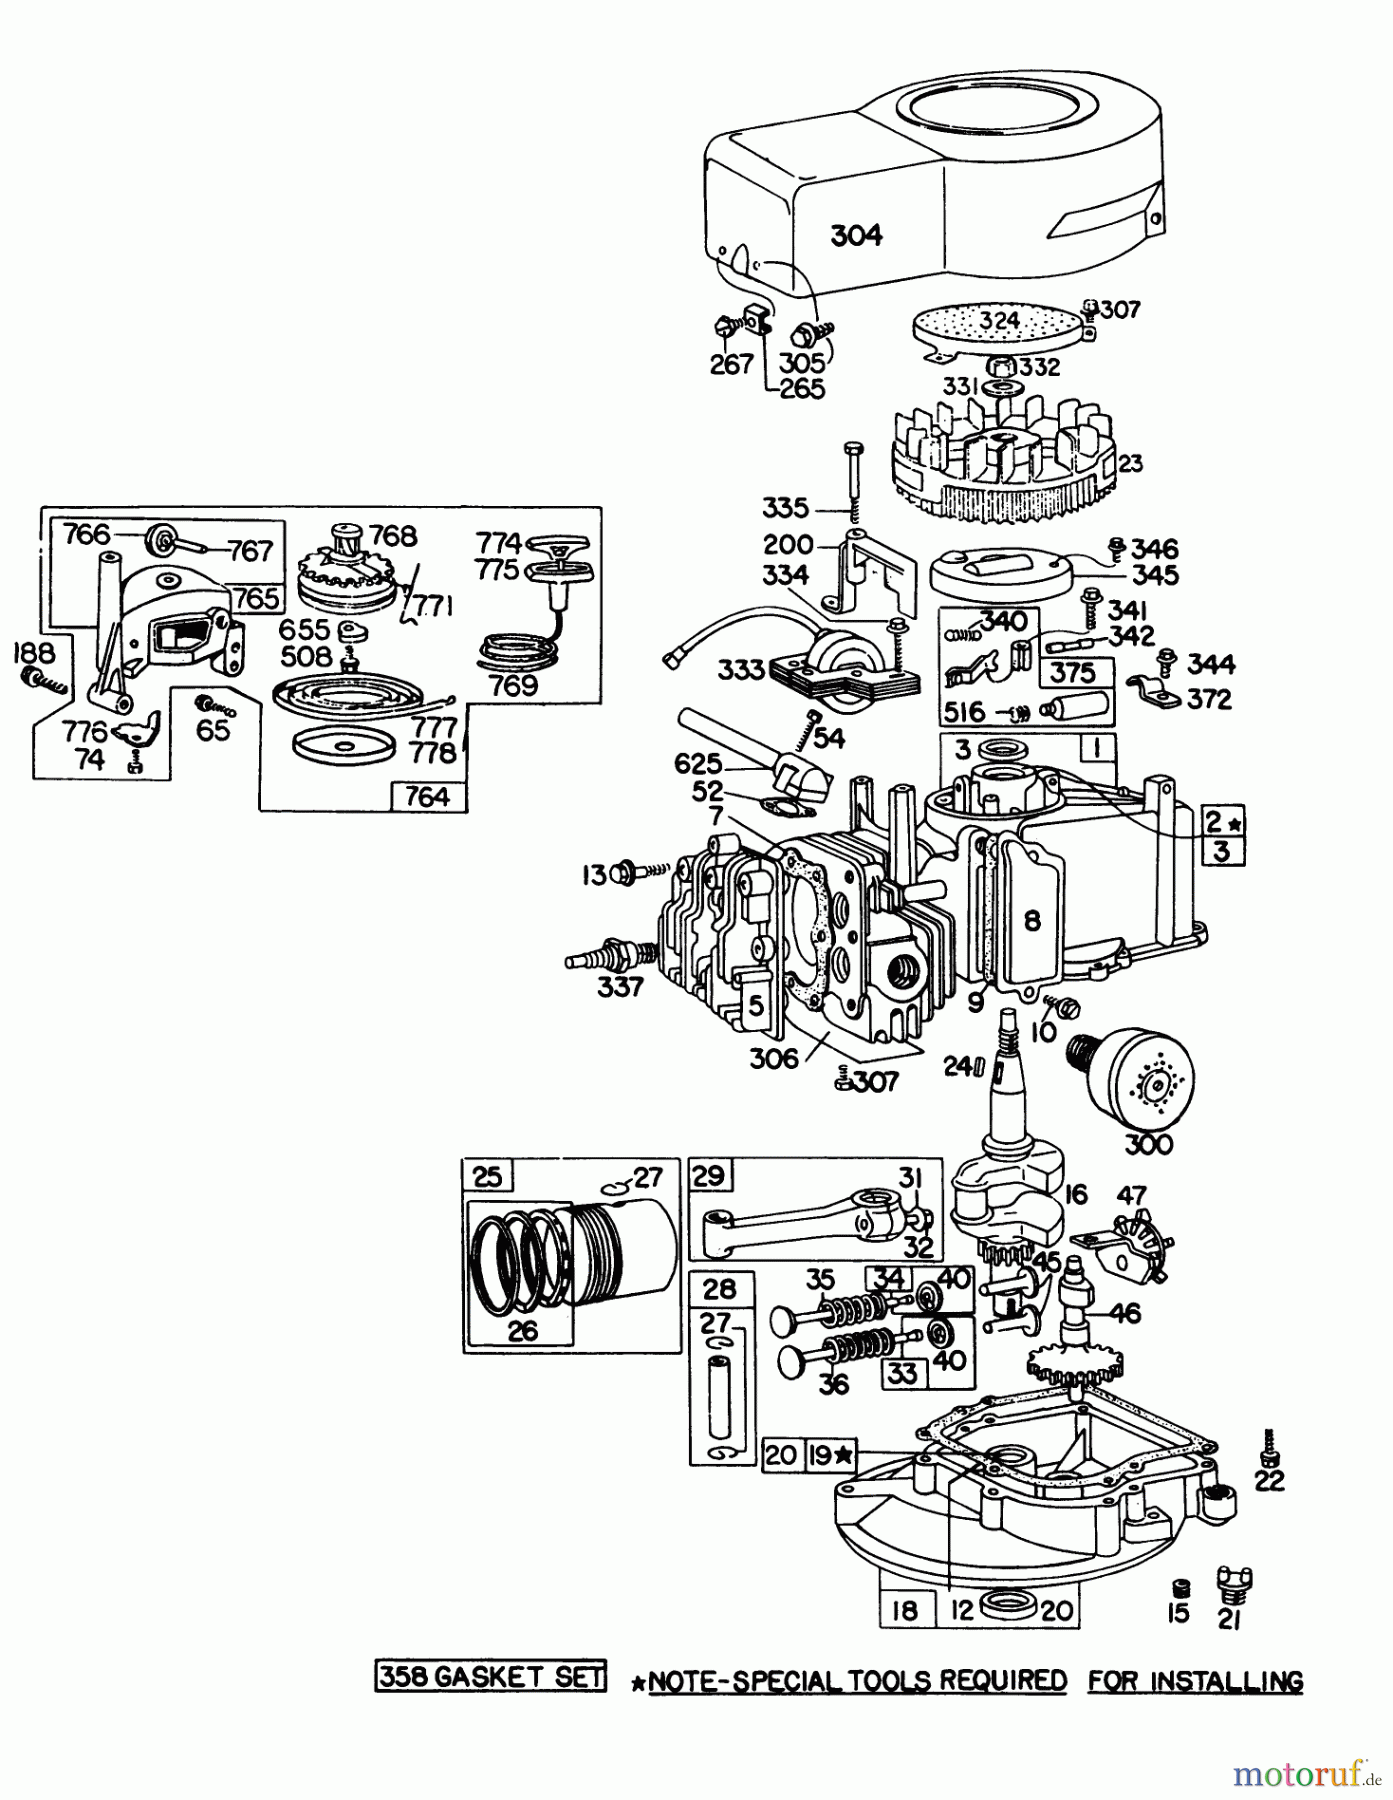  Toro Neu Mowers, Walk-Behind Seite 1 16009 - Toro Whirlwind II Lawnmower, 1977 (7000001-7999999) ENGINE BRIGGS & STRATTON MODEL 92908-1743-01 FOR 21